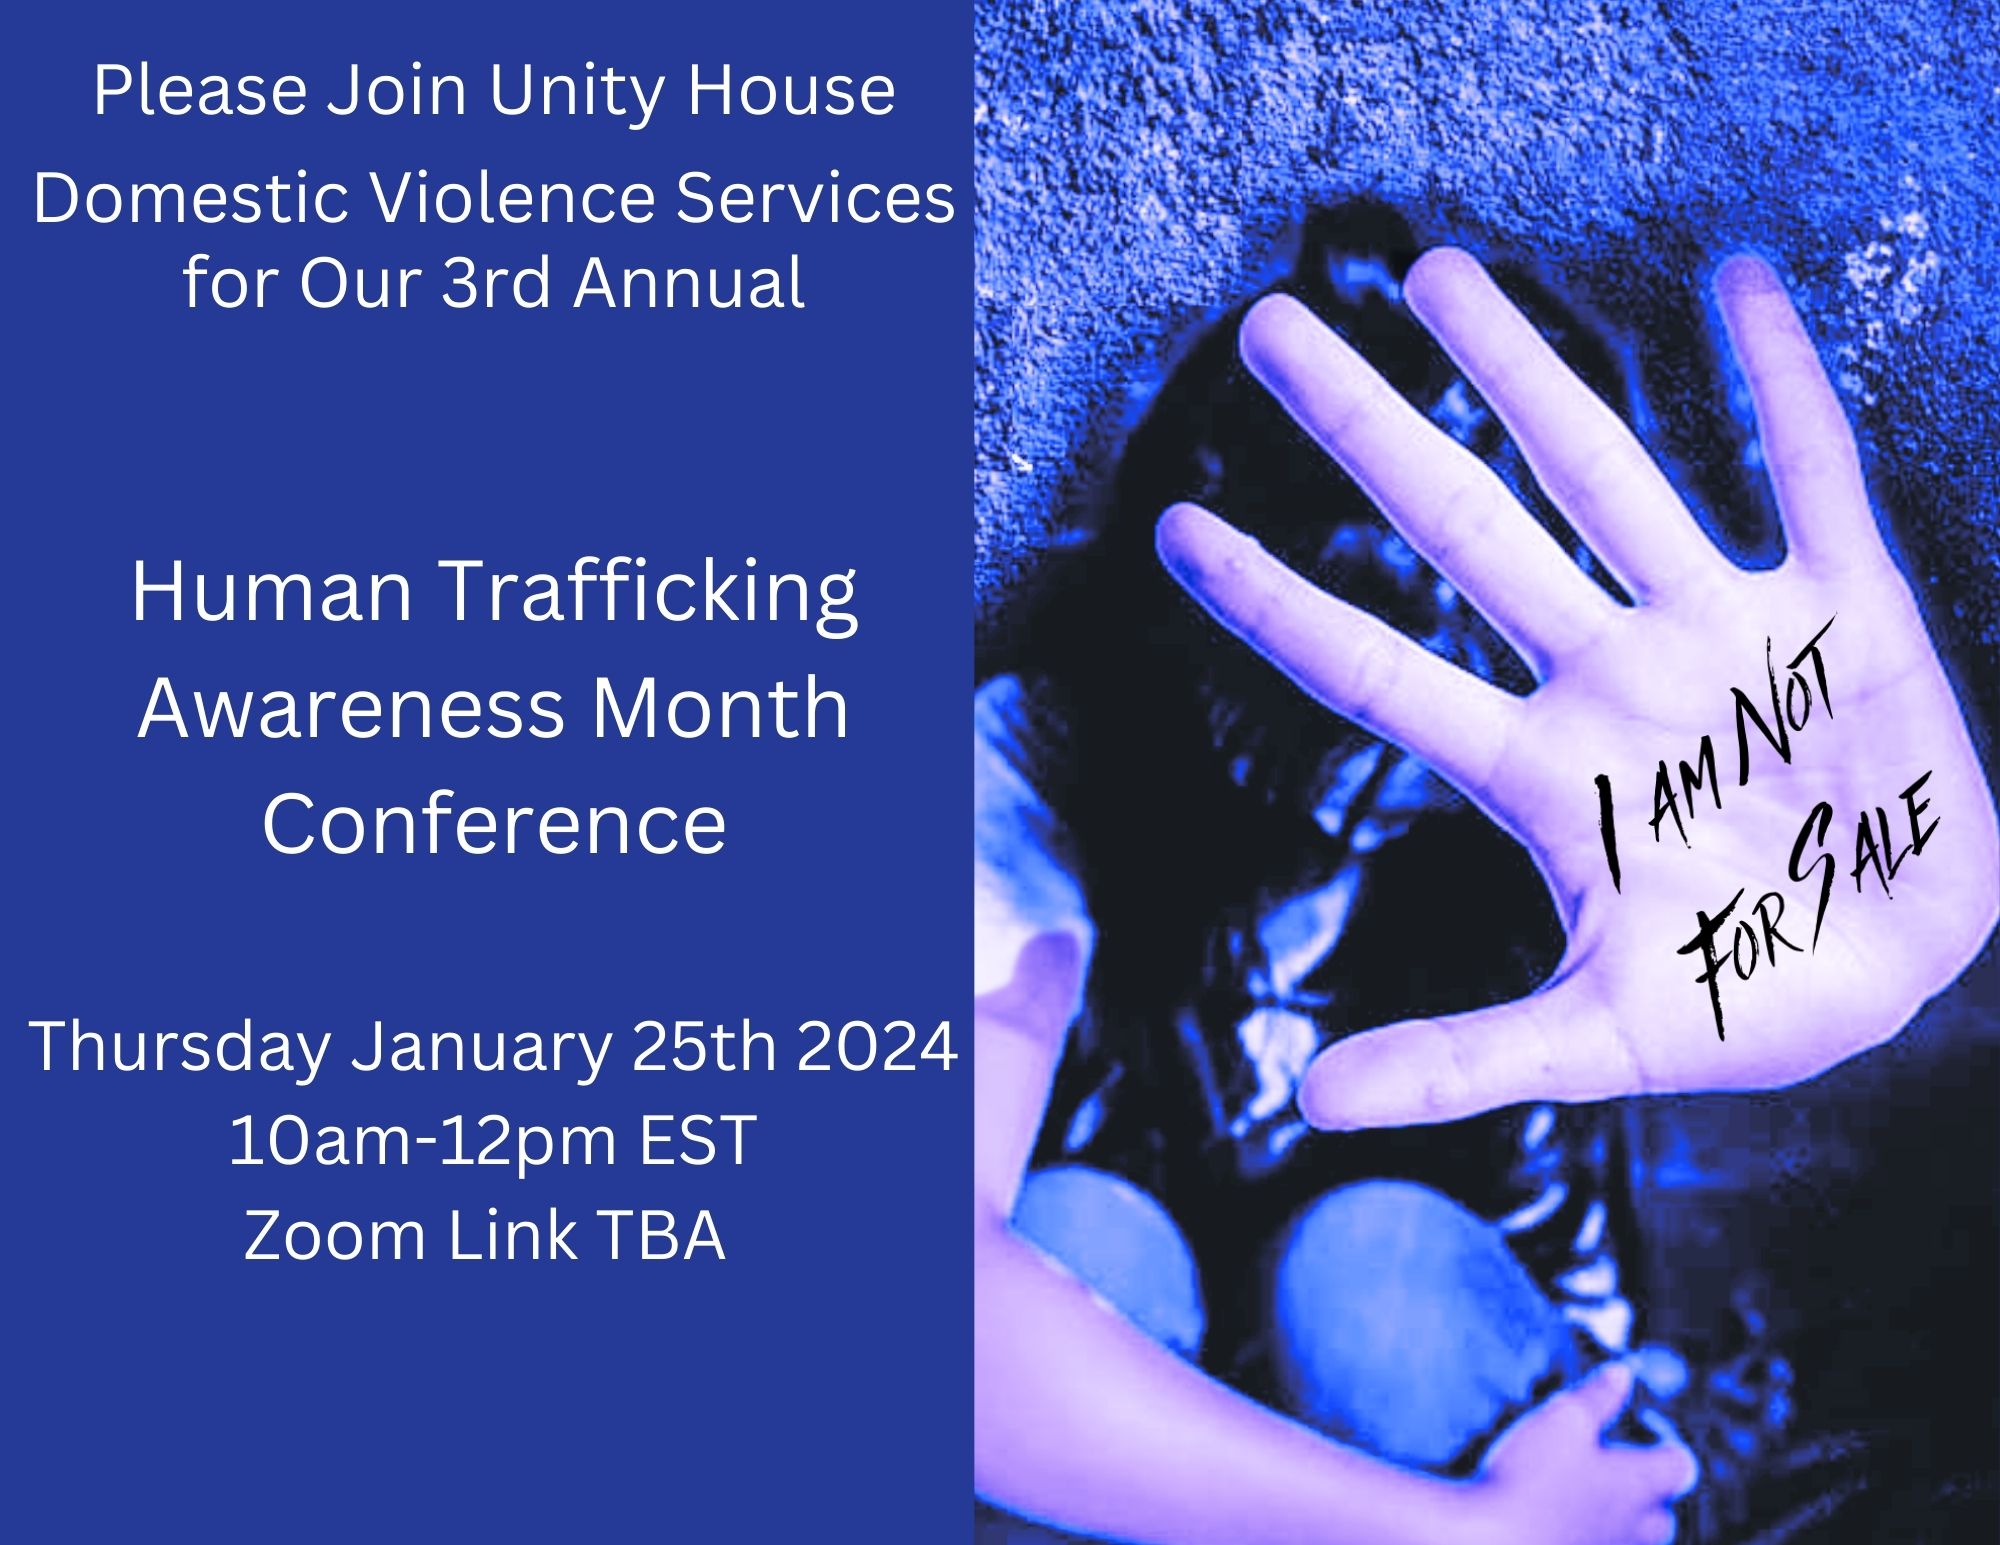 Human Trafficking Awareness Month Training